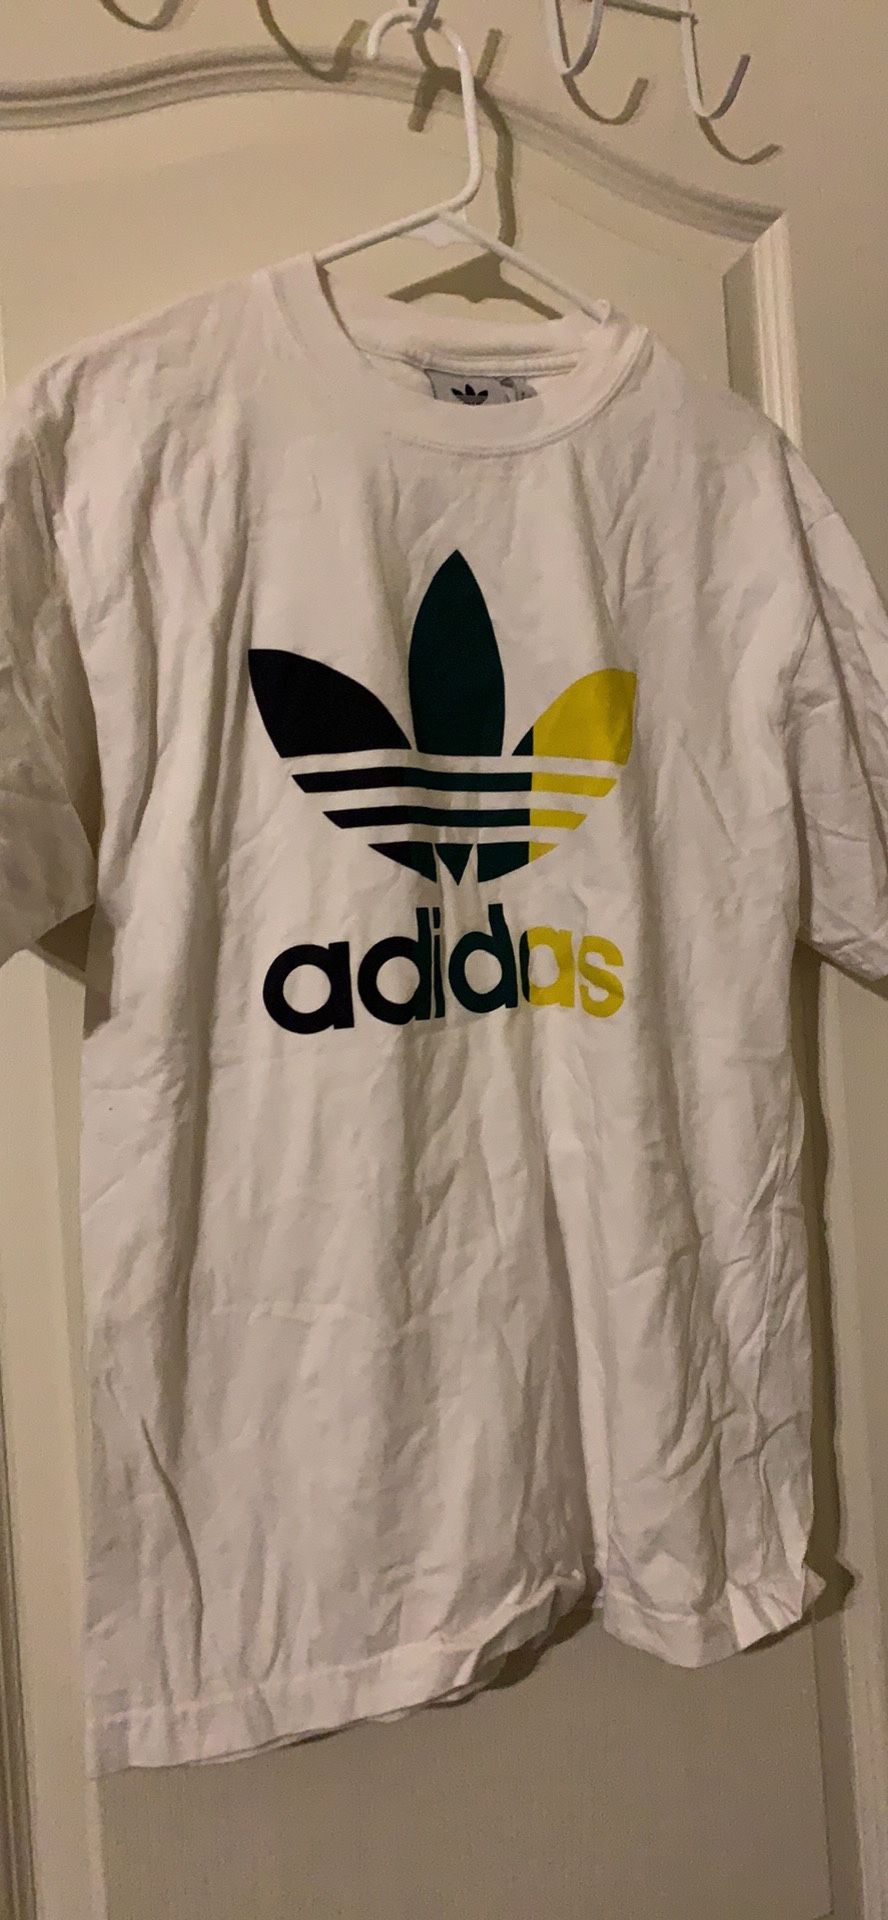 Adidas Medium T-shirt $3